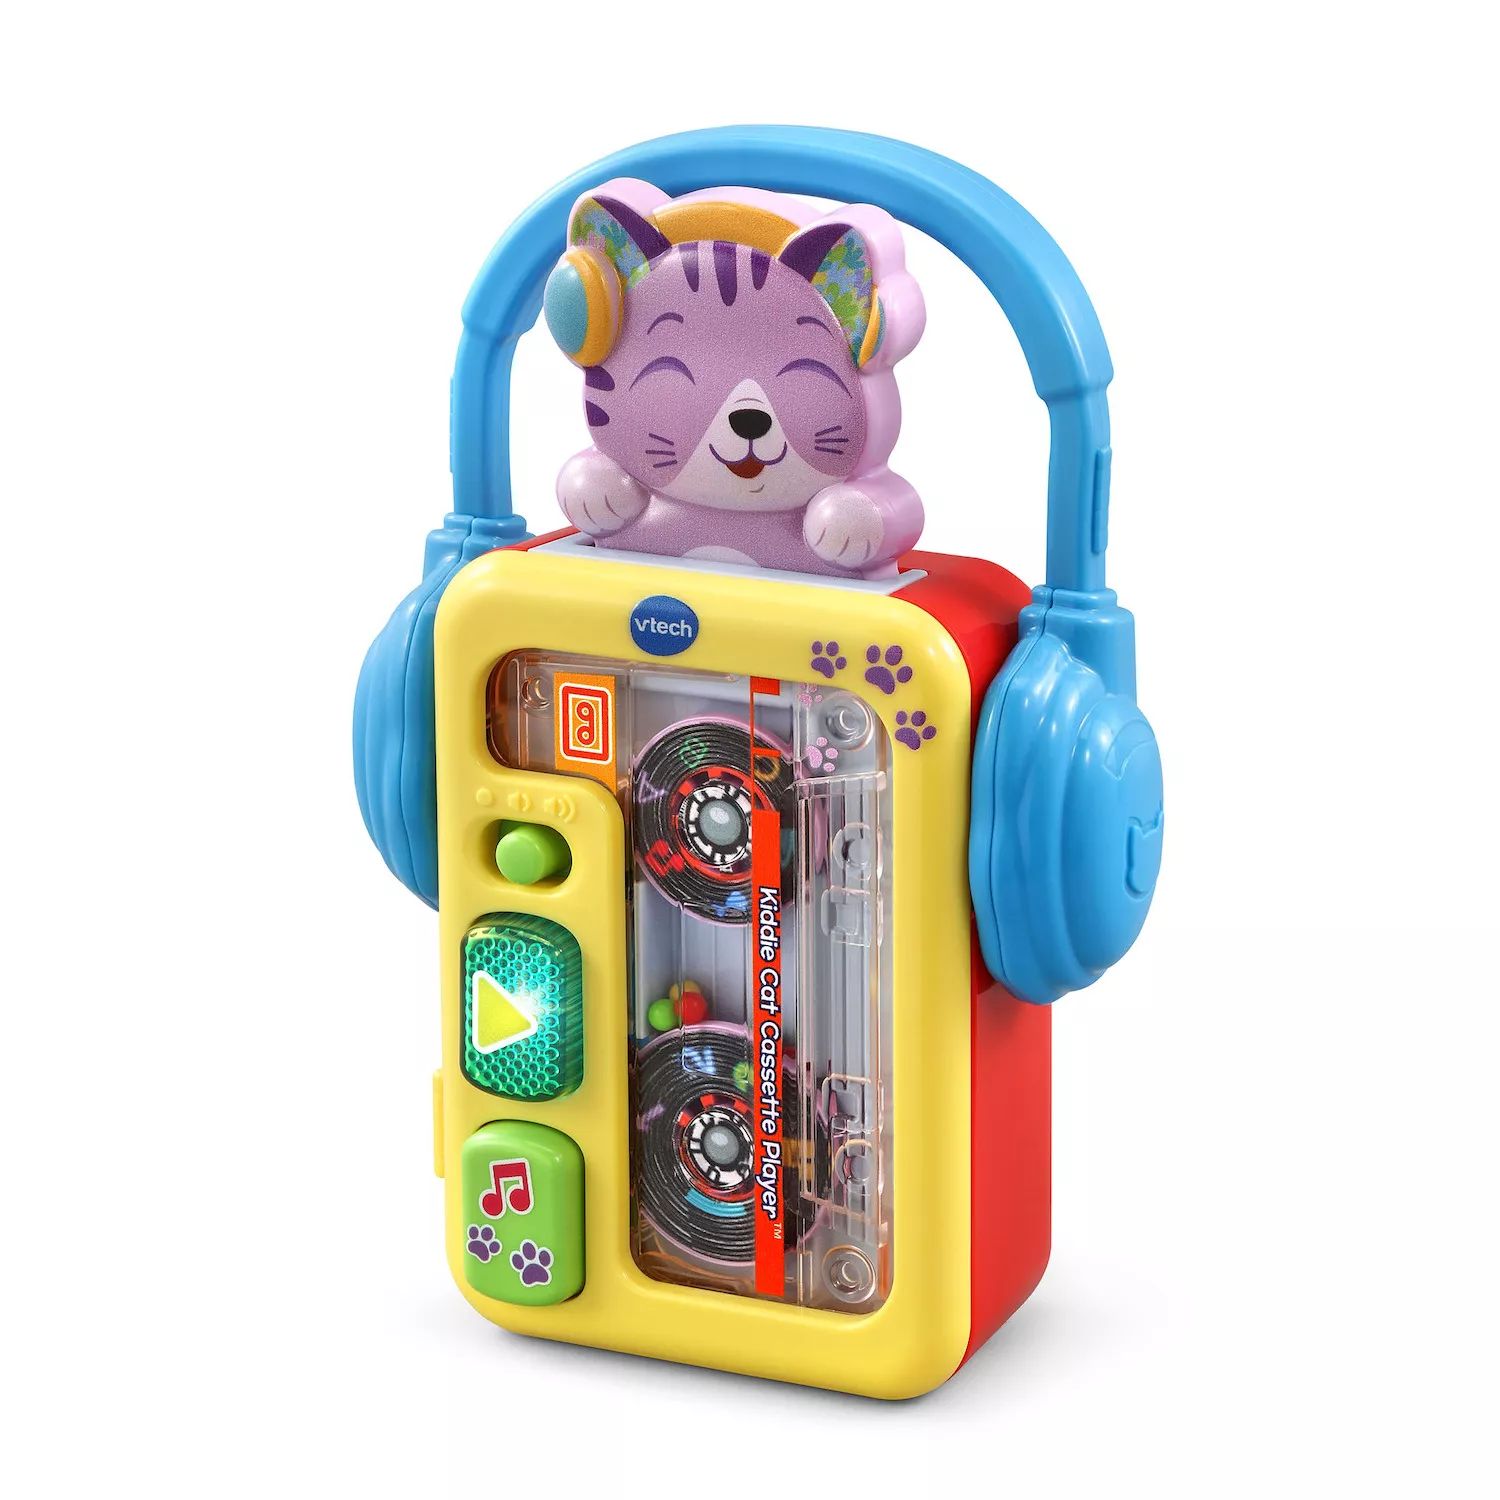 Игрушка-кассетный плеер VTech Kiddie Cat VTech игрушка vtech самосвал погрузи и вези